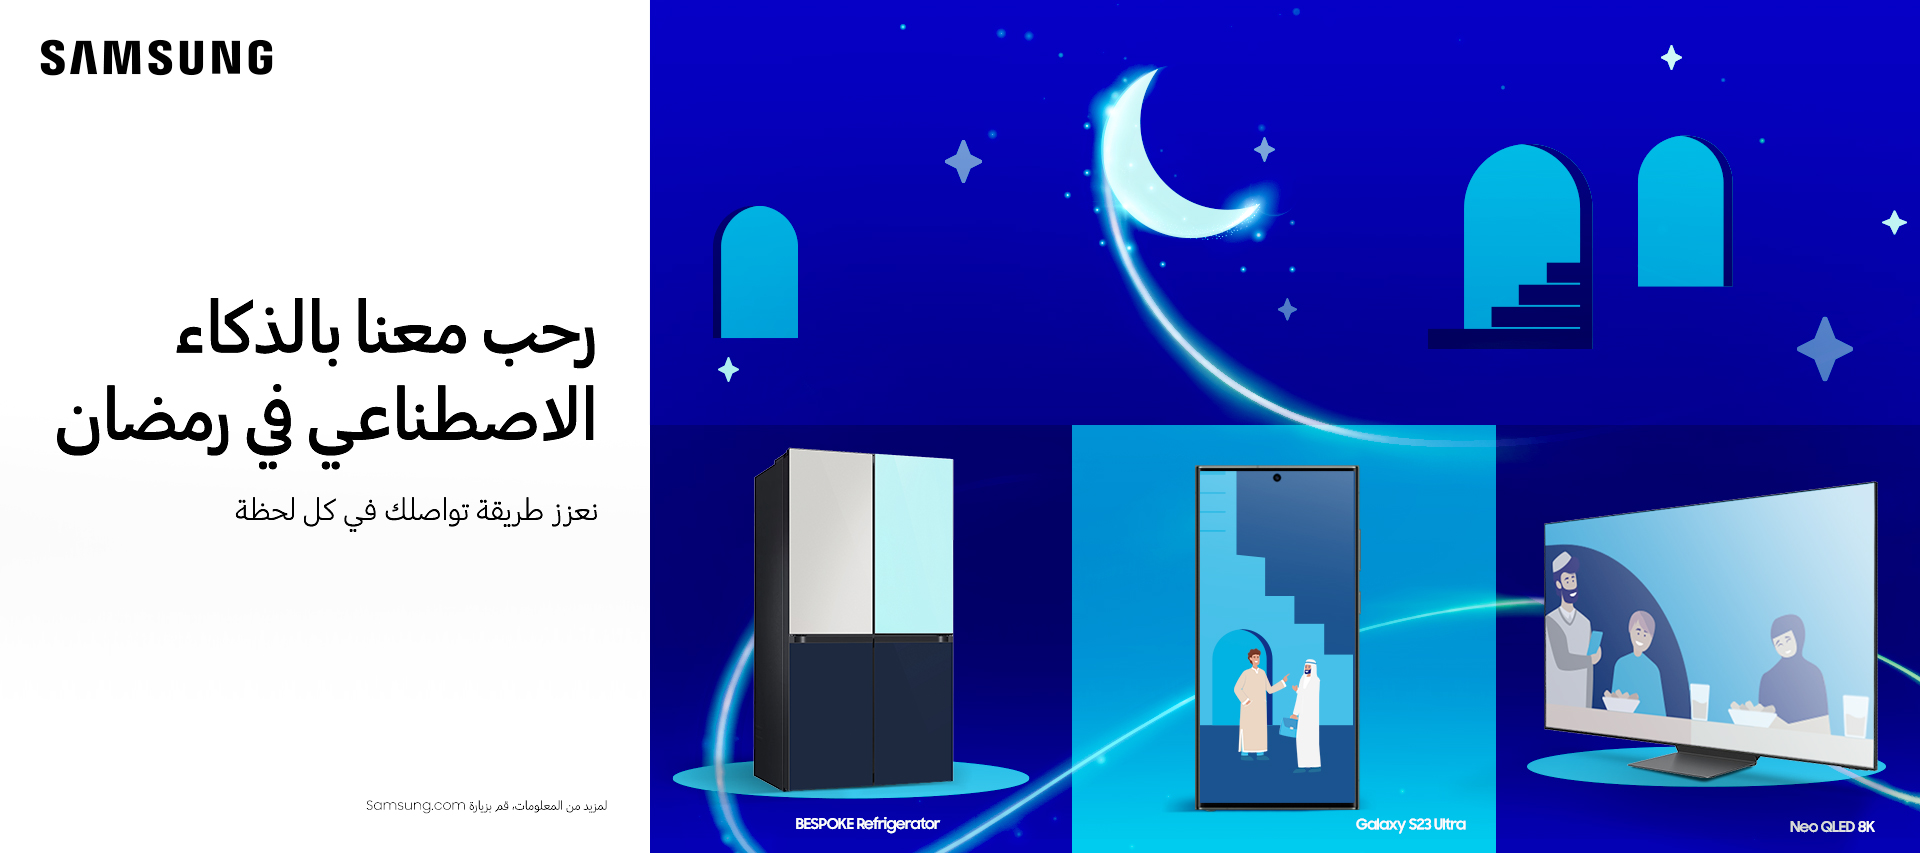 سامسونج تستقبل رمضان بأجهزتها المدعمة بالذكاء الاصطناعي من خلال حملة “رحّب معنا بالذكاء الاصطناعي في رمضان”